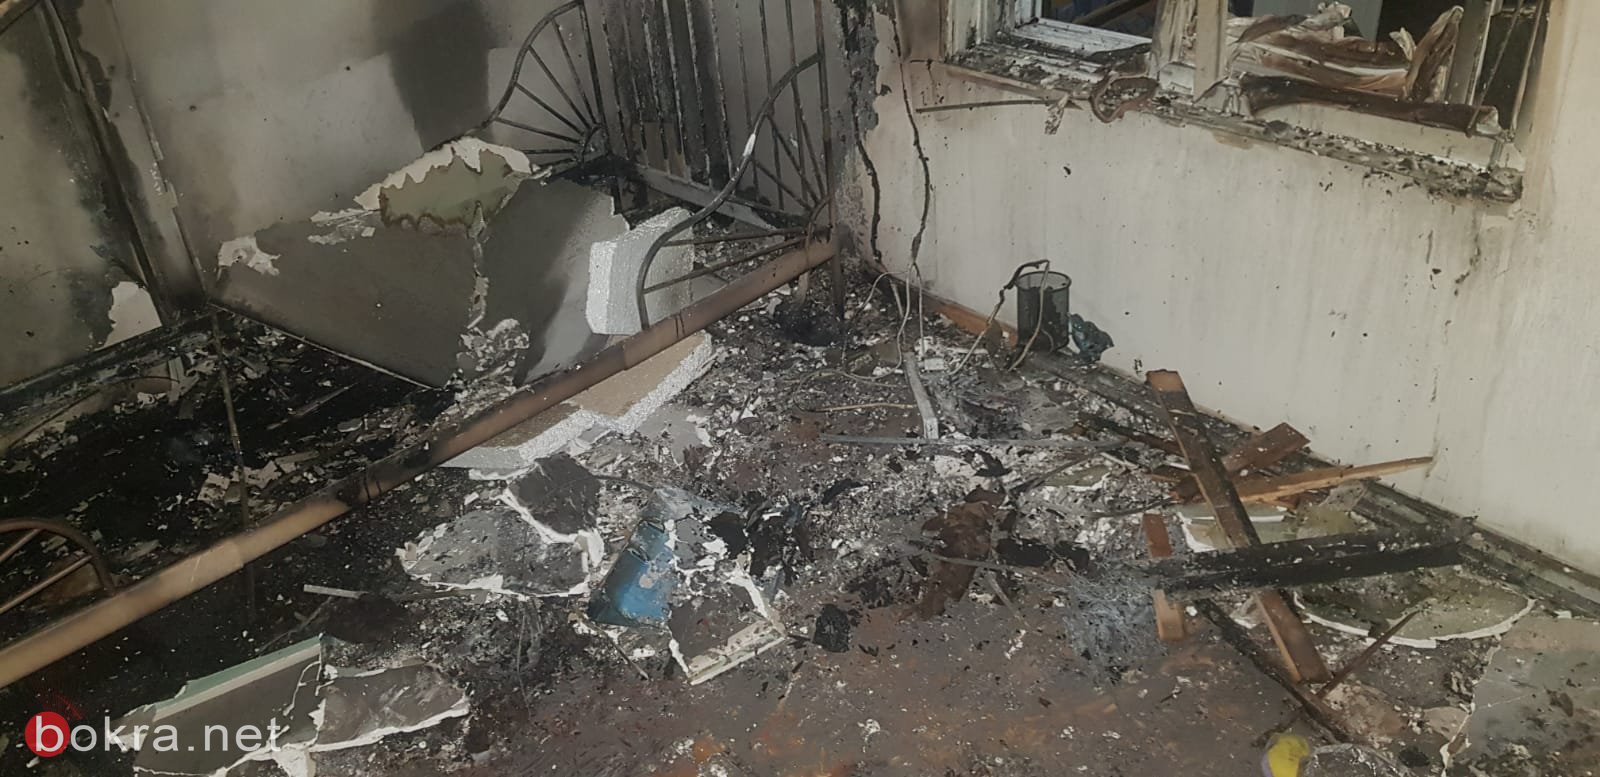 معلوت ترشيحا: حريق في شقة سكنية بسبب "جهاز موزع الحرارة"-2